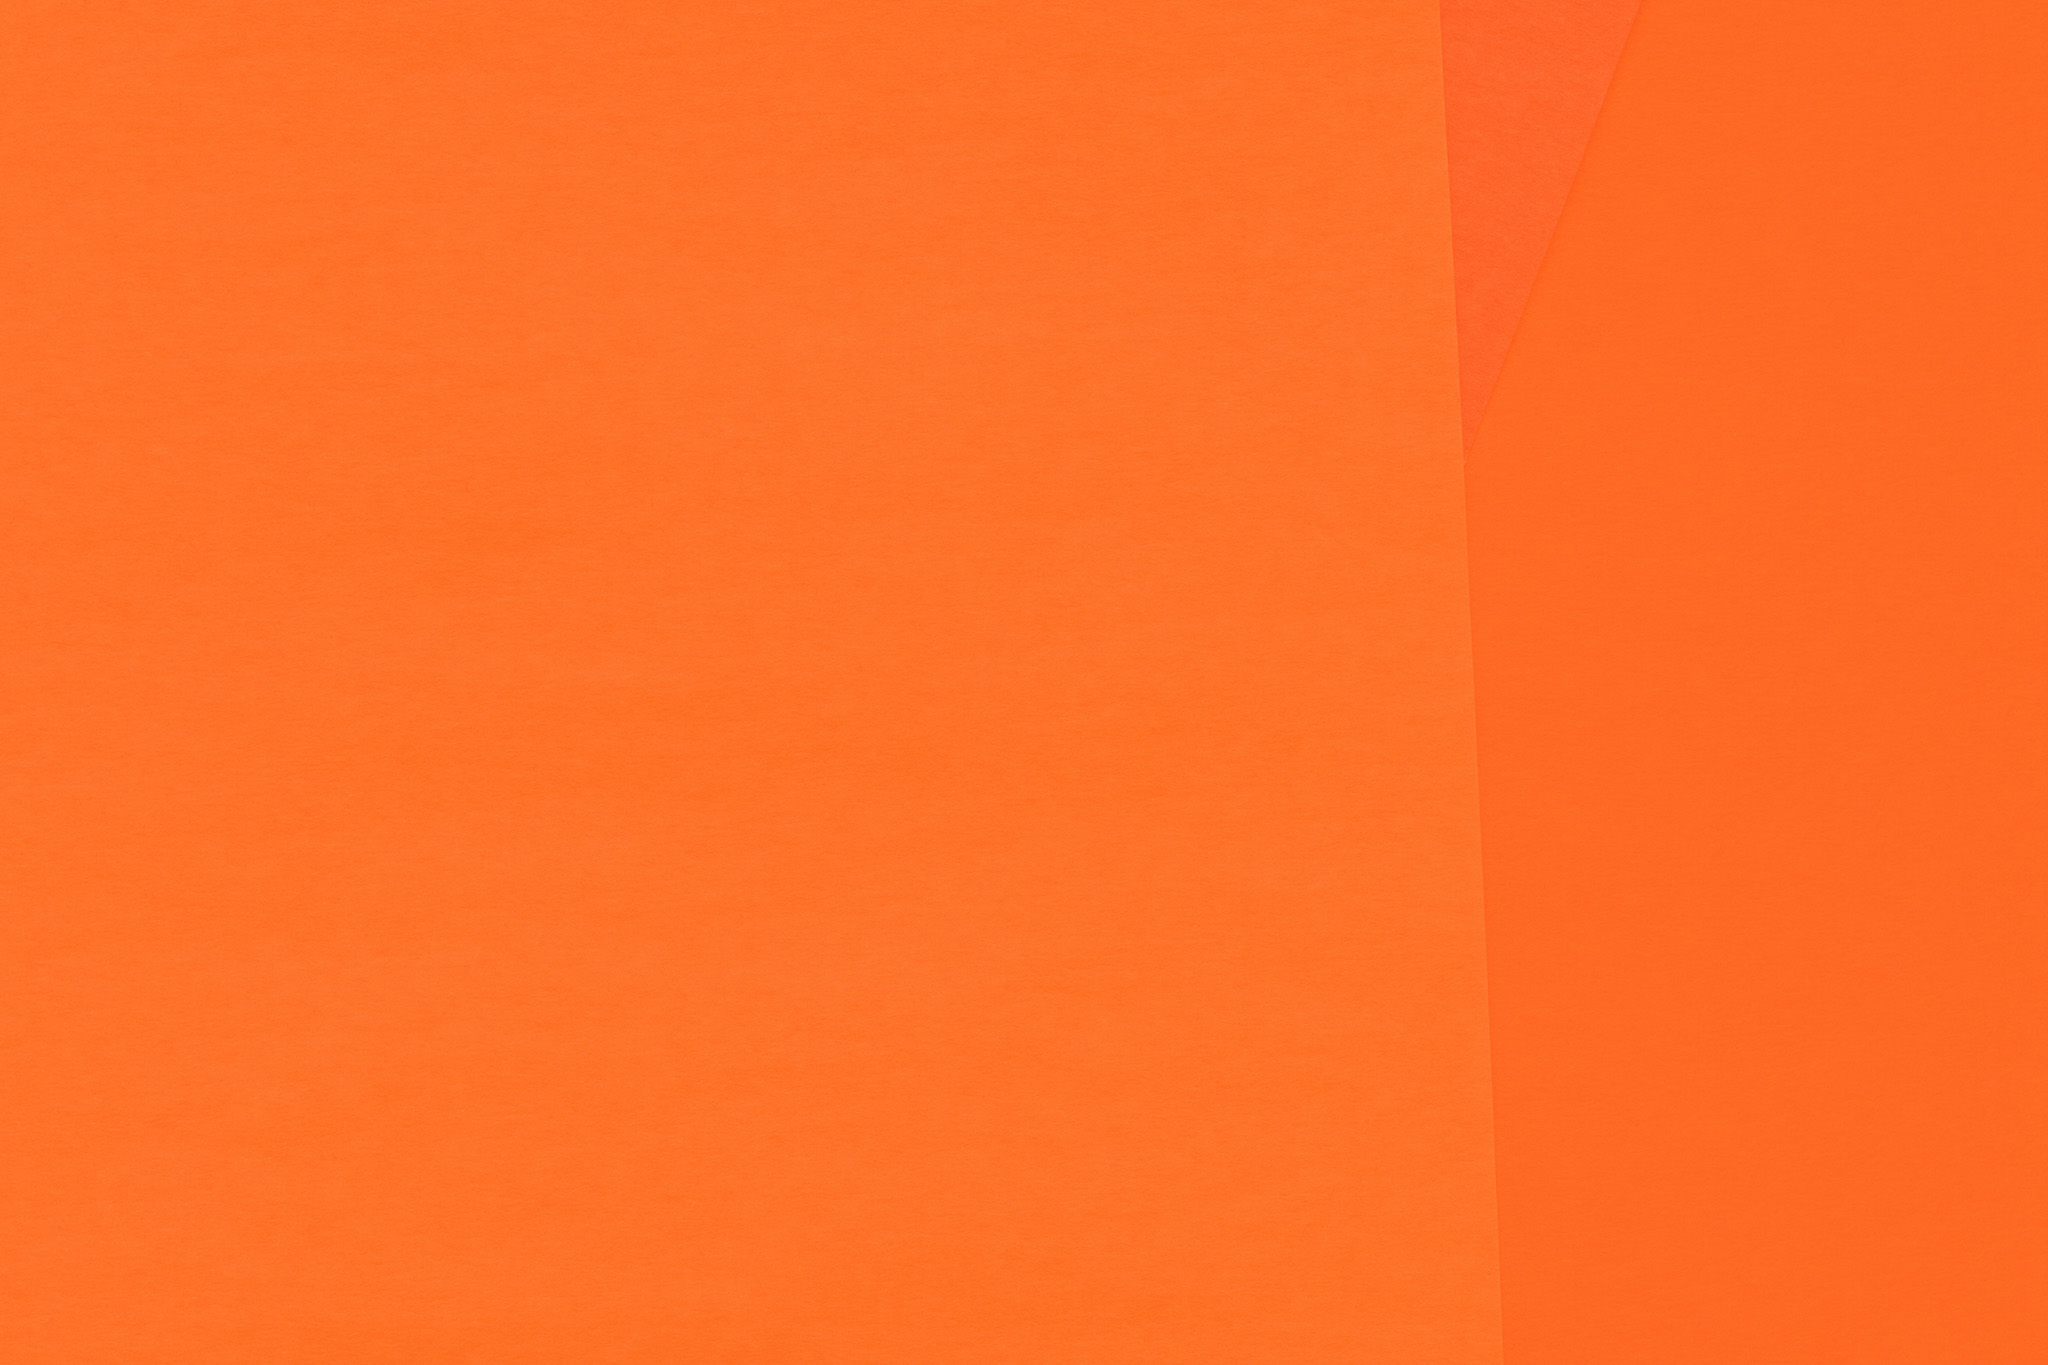 クールなオレンジ色のシンプルな壁紙 の画像素材を無料ダウンロード 1 フリー素材 Beiz Images